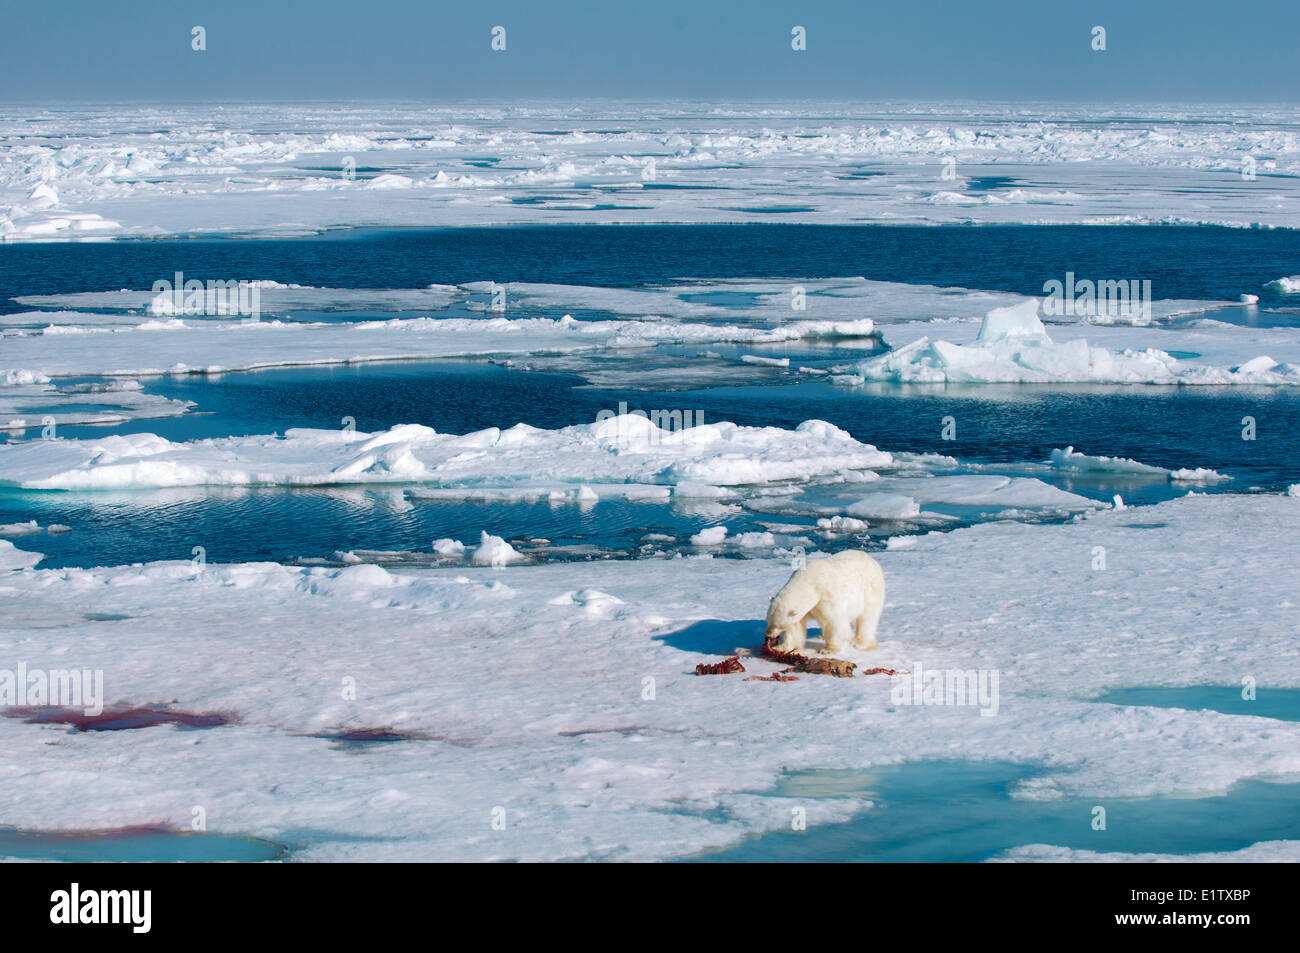 Des profils l'ours polaire (Ursus maritimus) se nourrissant des restes d'un phoque barbu kill, archipel du Svalbard, l'Arctique norvégien Banque D'Images